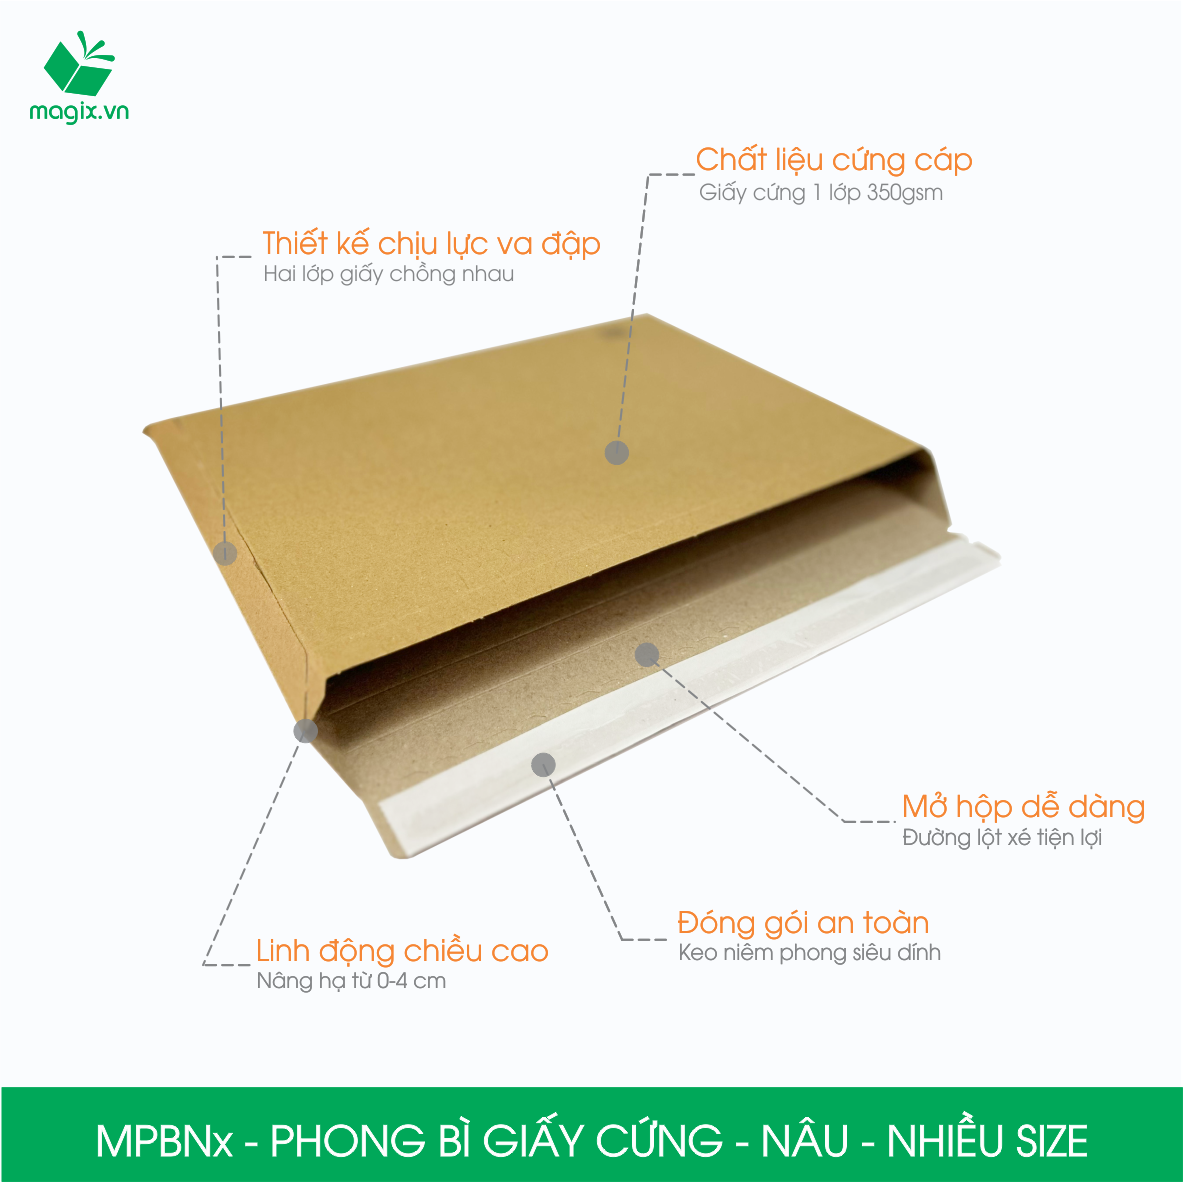 MPBN - Combo 20 phong bì giấy cứng đóng hàng màu nâu thay thế túi gói hàng - Nhiều kích thước